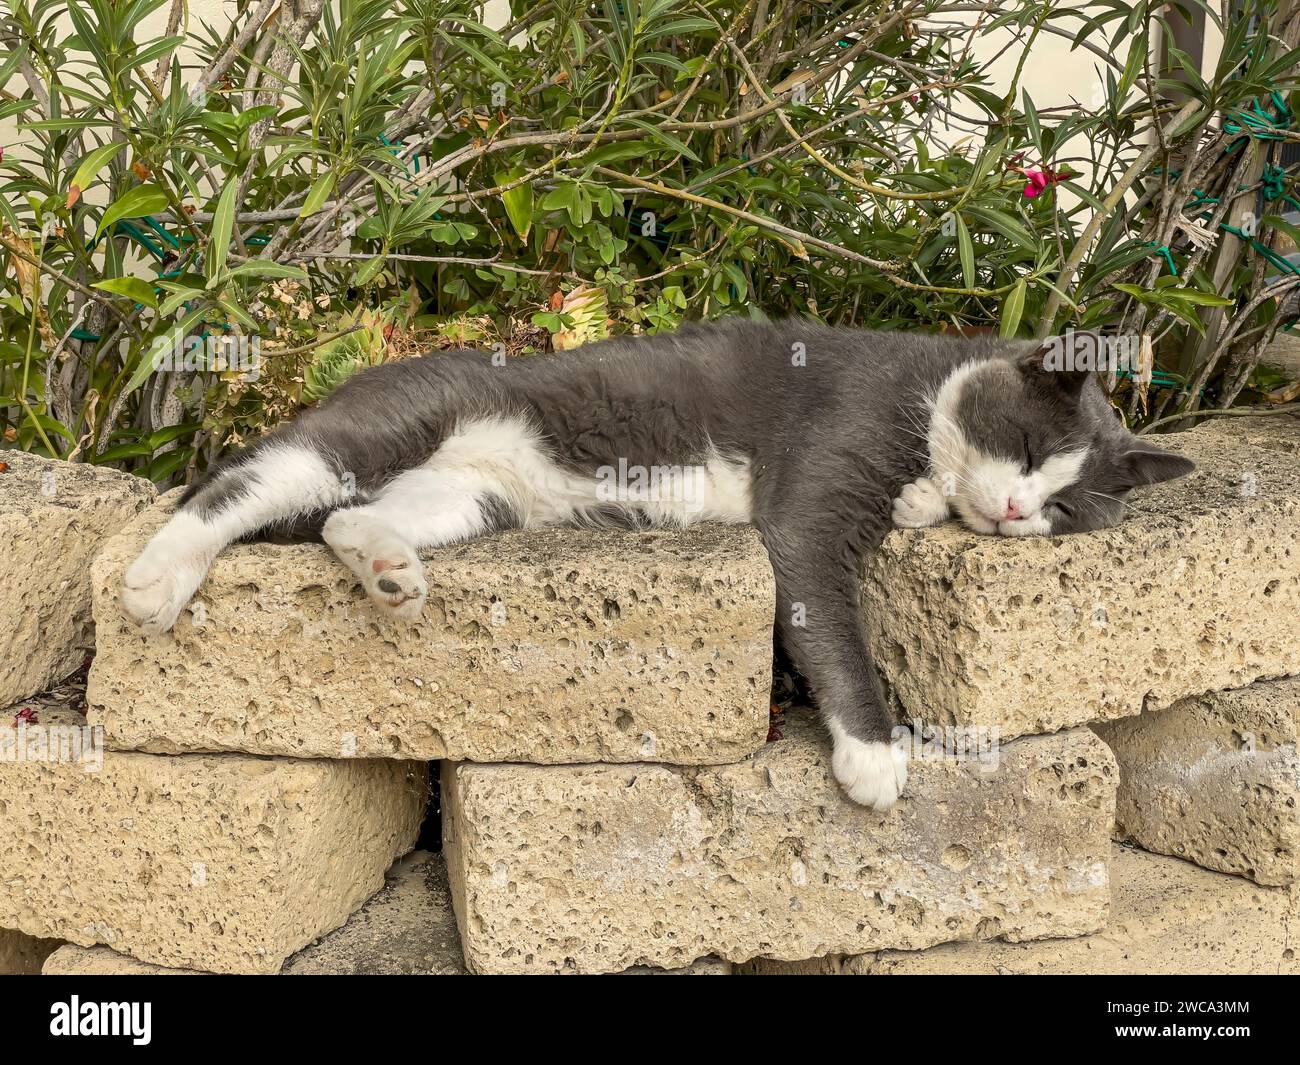 Images d'un chat gris mignon dormant paisiblement sur un mur de jardin ensoleillé, incarnant la tranquillité et le contentement. Banque D'Images